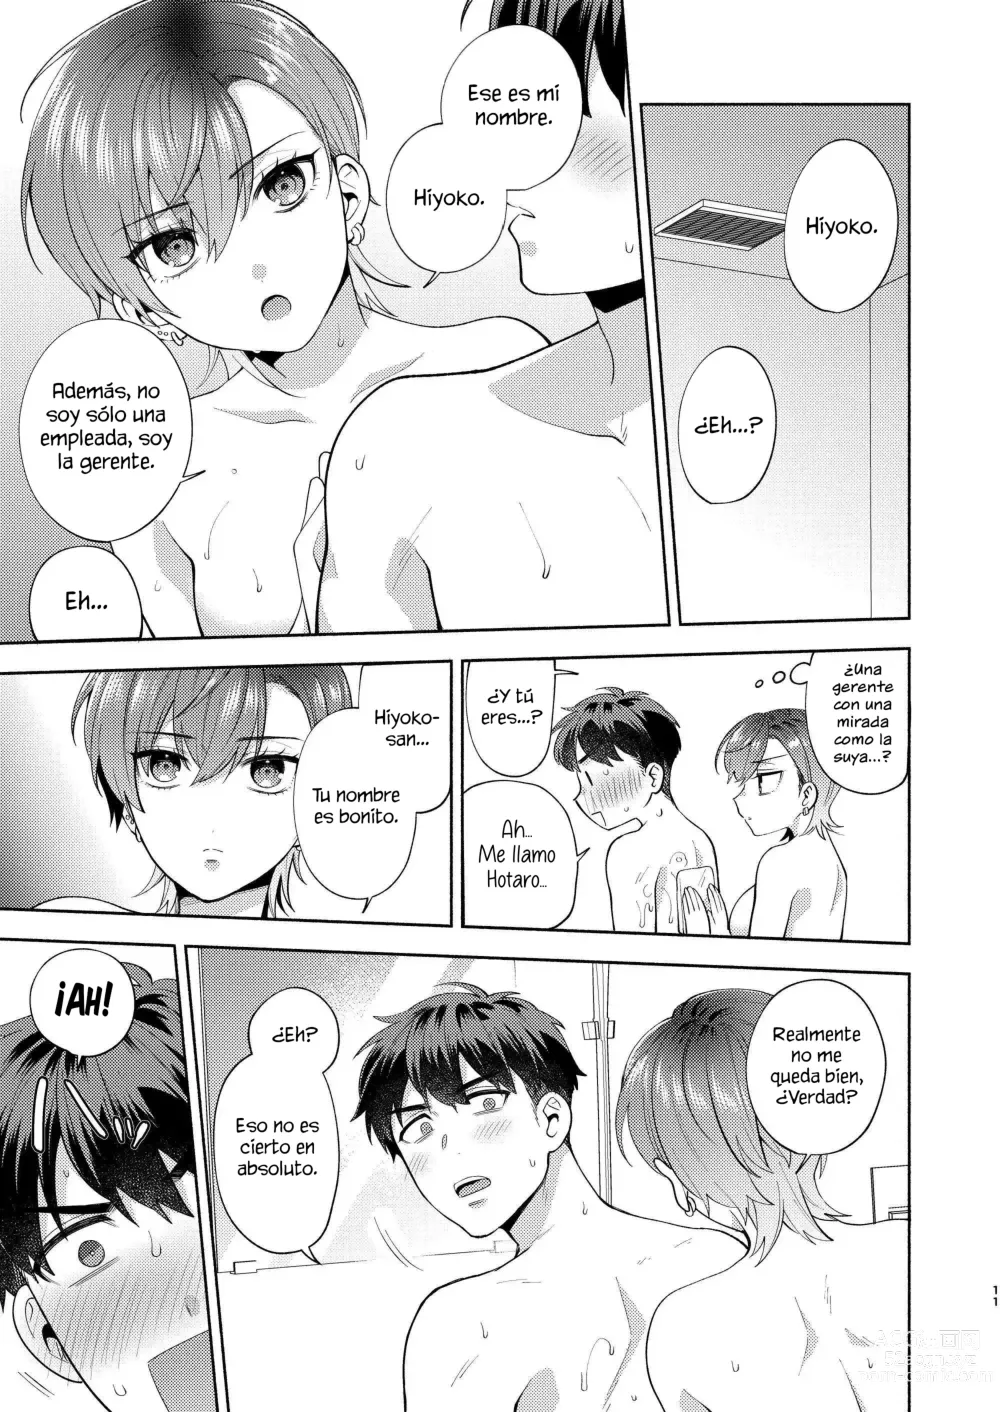 Page 10 of doujinshi Hiyoko es una entrometida